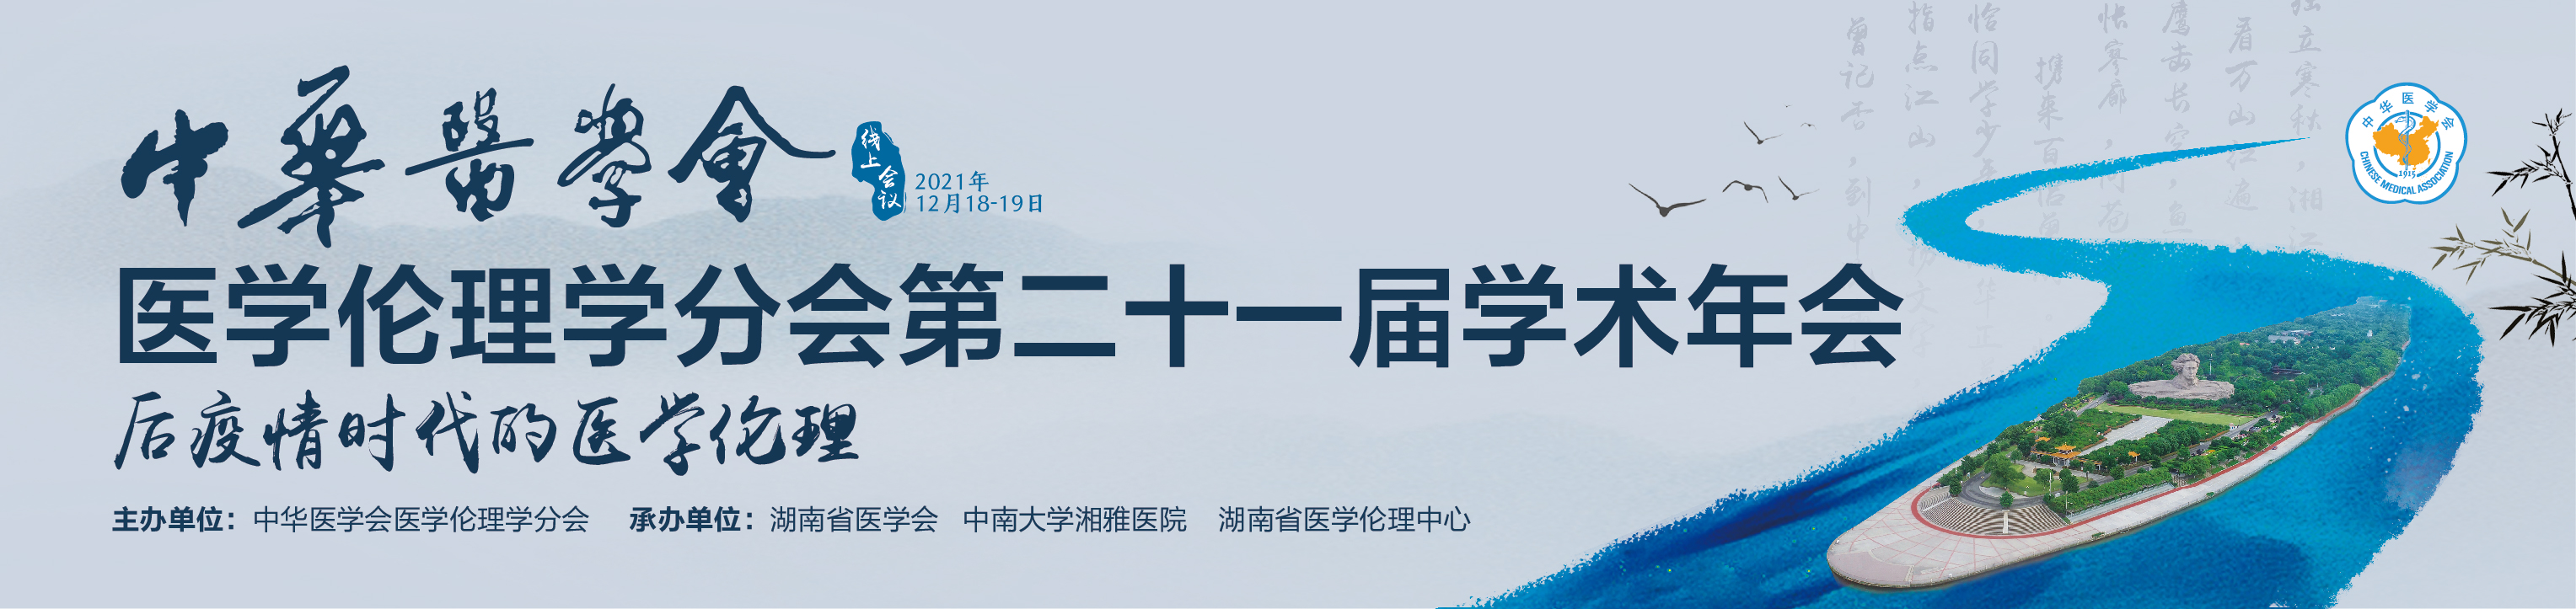 中华医学会医学伦理学分会第二十一届学术年会